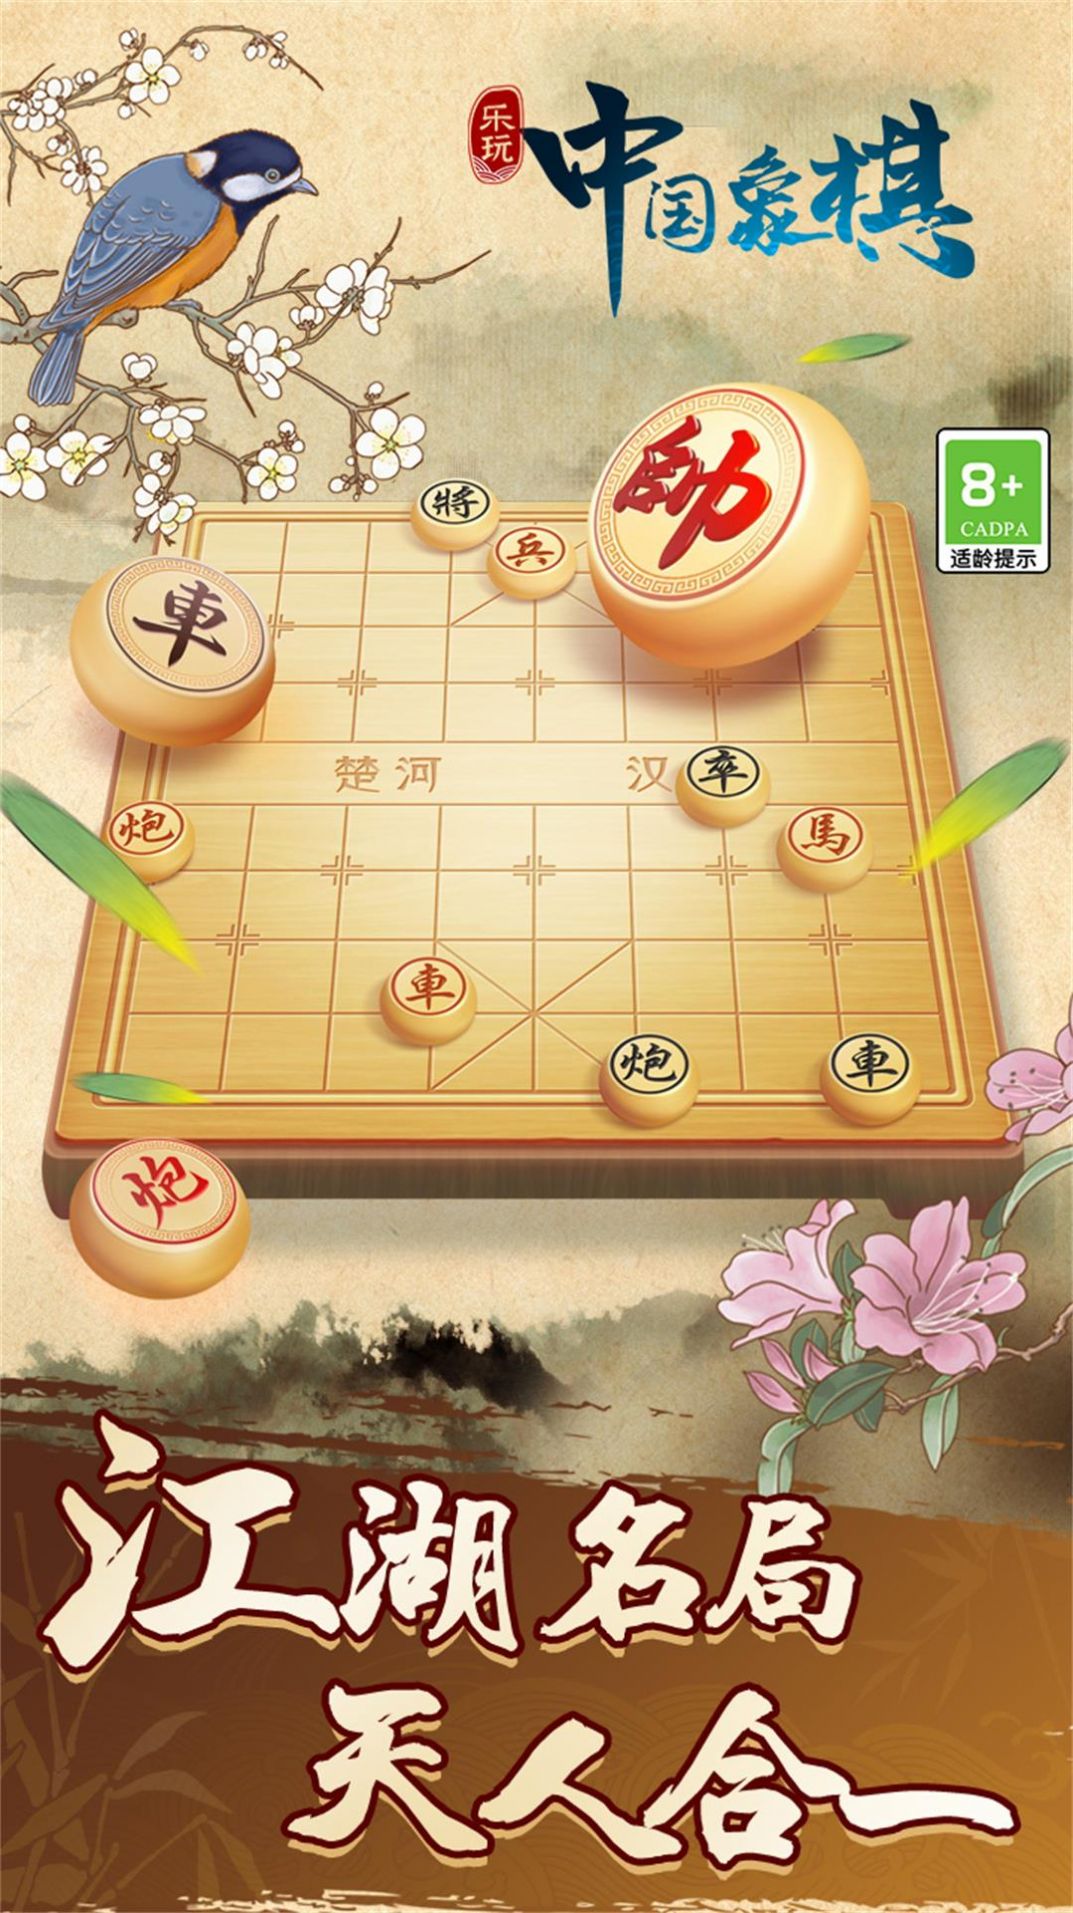 中国象棋巅峰博弈游戏官方手机版图1: